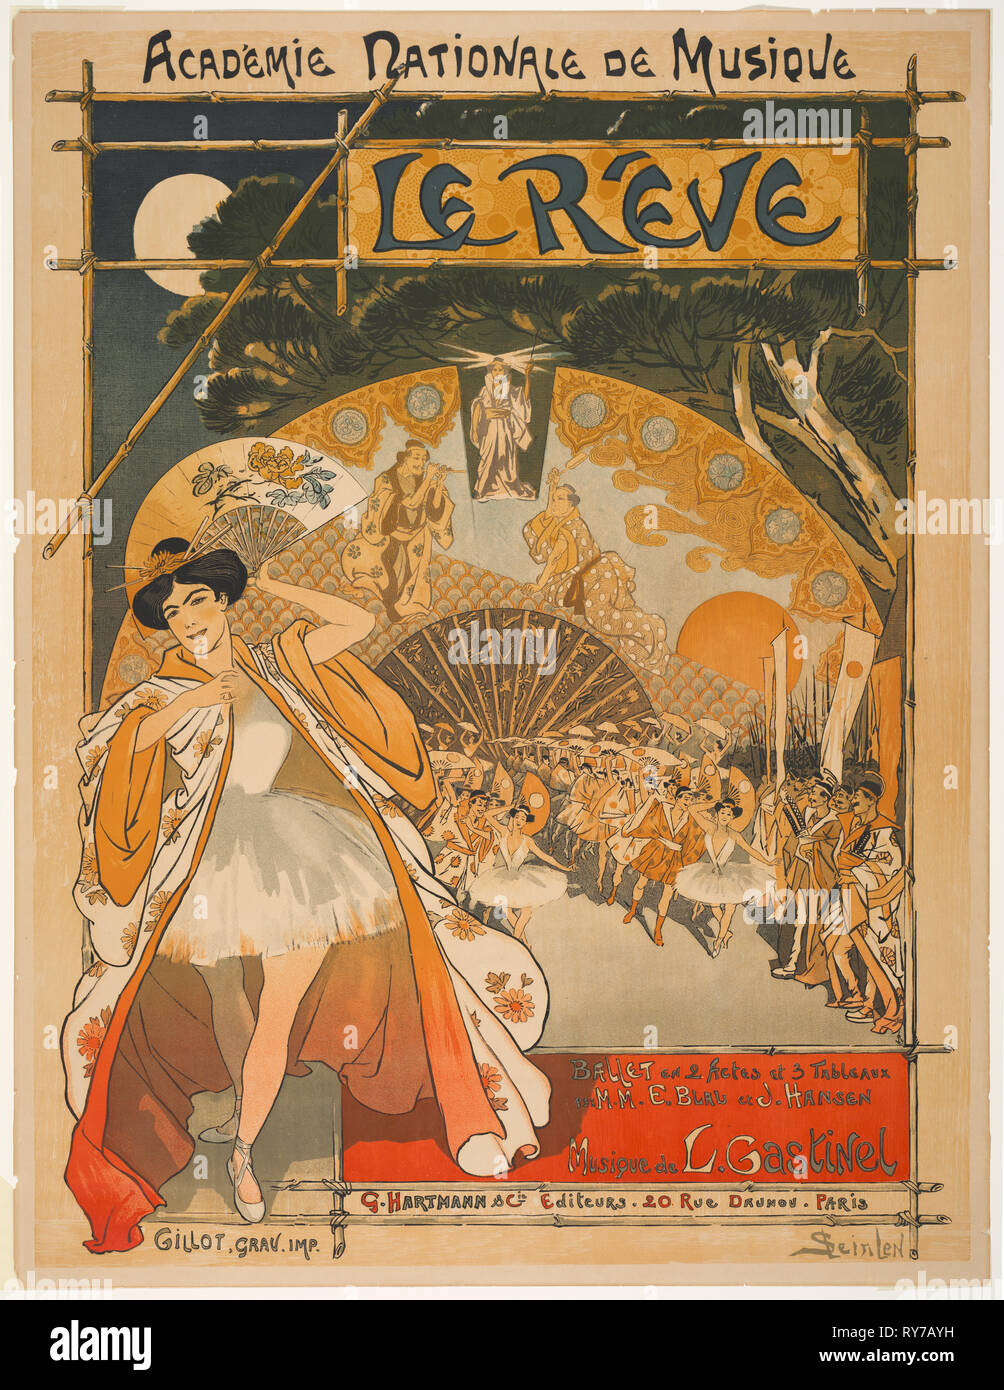 Académie Nationale de Musique: Der Traum, 1891. Théophile Alexandre Steinlen (Schweiz, 1859-1923), G. Hartmann & Cie Editeurs, 20 rue Daunou, Paris. Farblithographie; Blatt: 81,2 x 62,2 cm (31 15/16 x 24 1/2 in.); Bild: 76,8 x 59,7 cm (30 1/4 x 23 1/2 in. Stockfoto